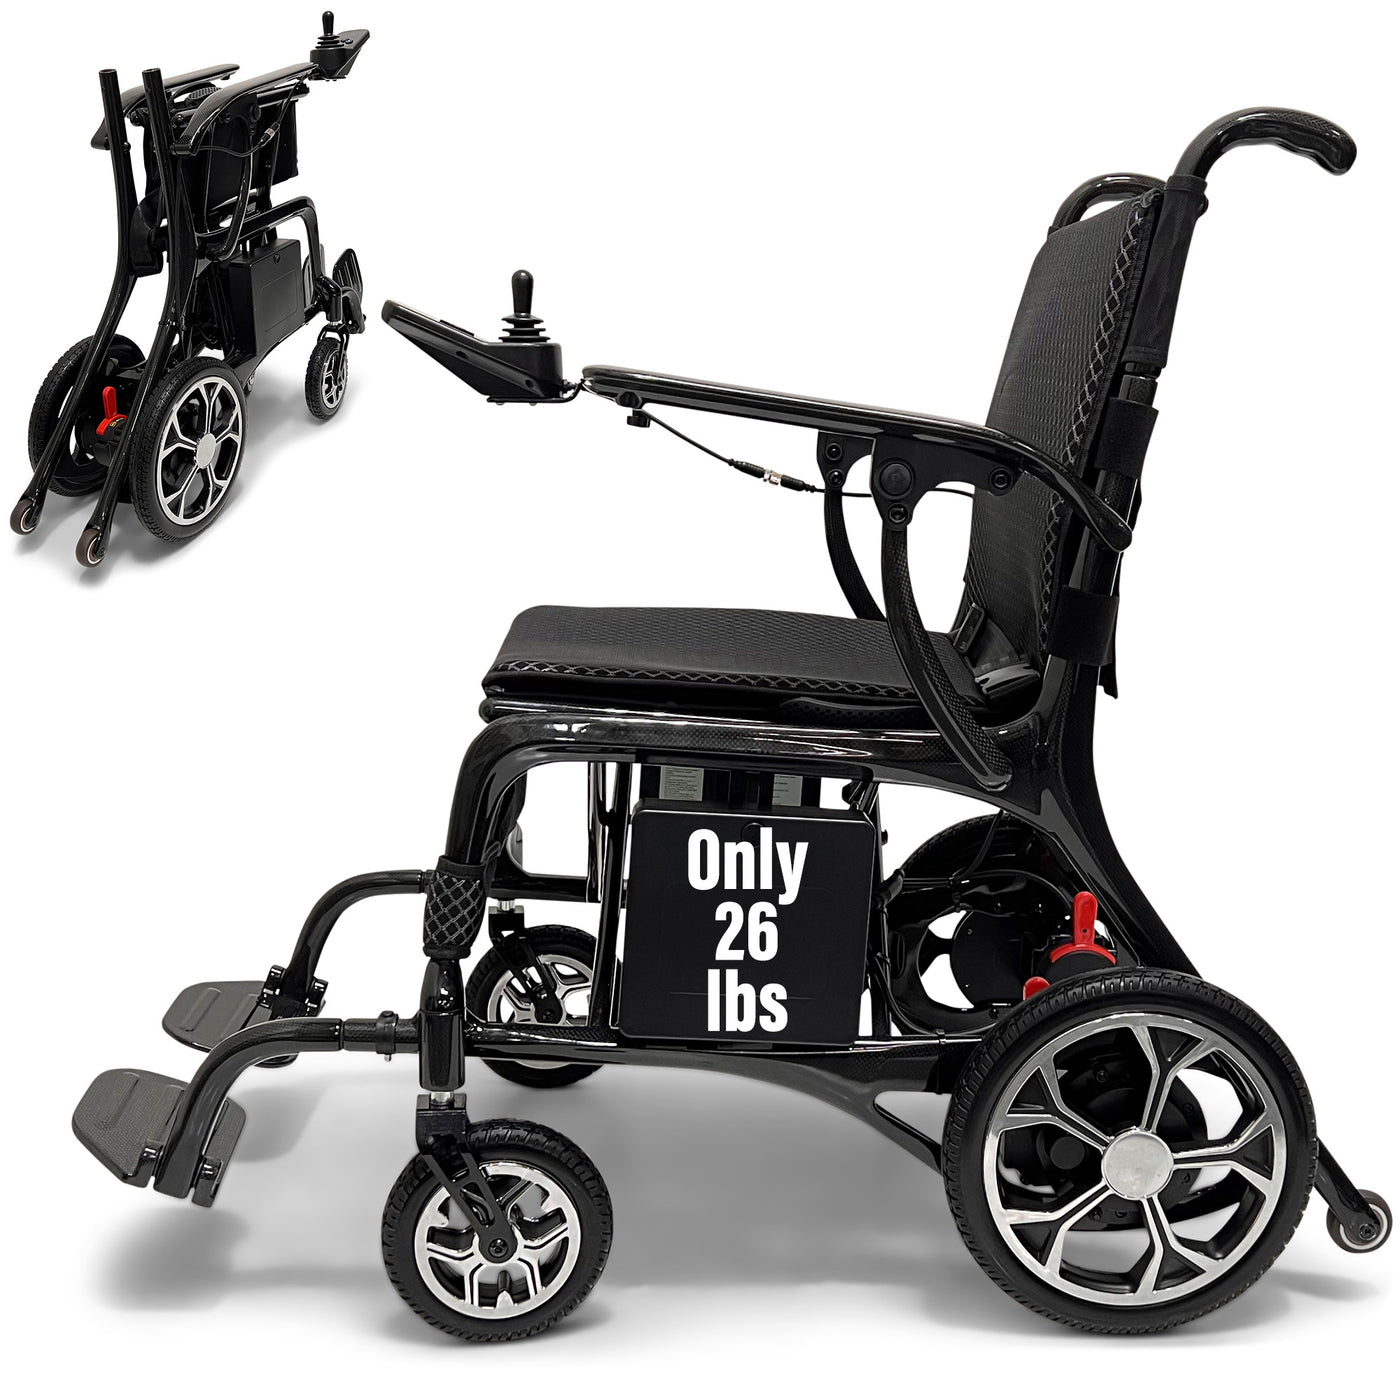 Electric Wheelchair - Ultra Lightweight 26 lbs, Carbon Fiber Frame